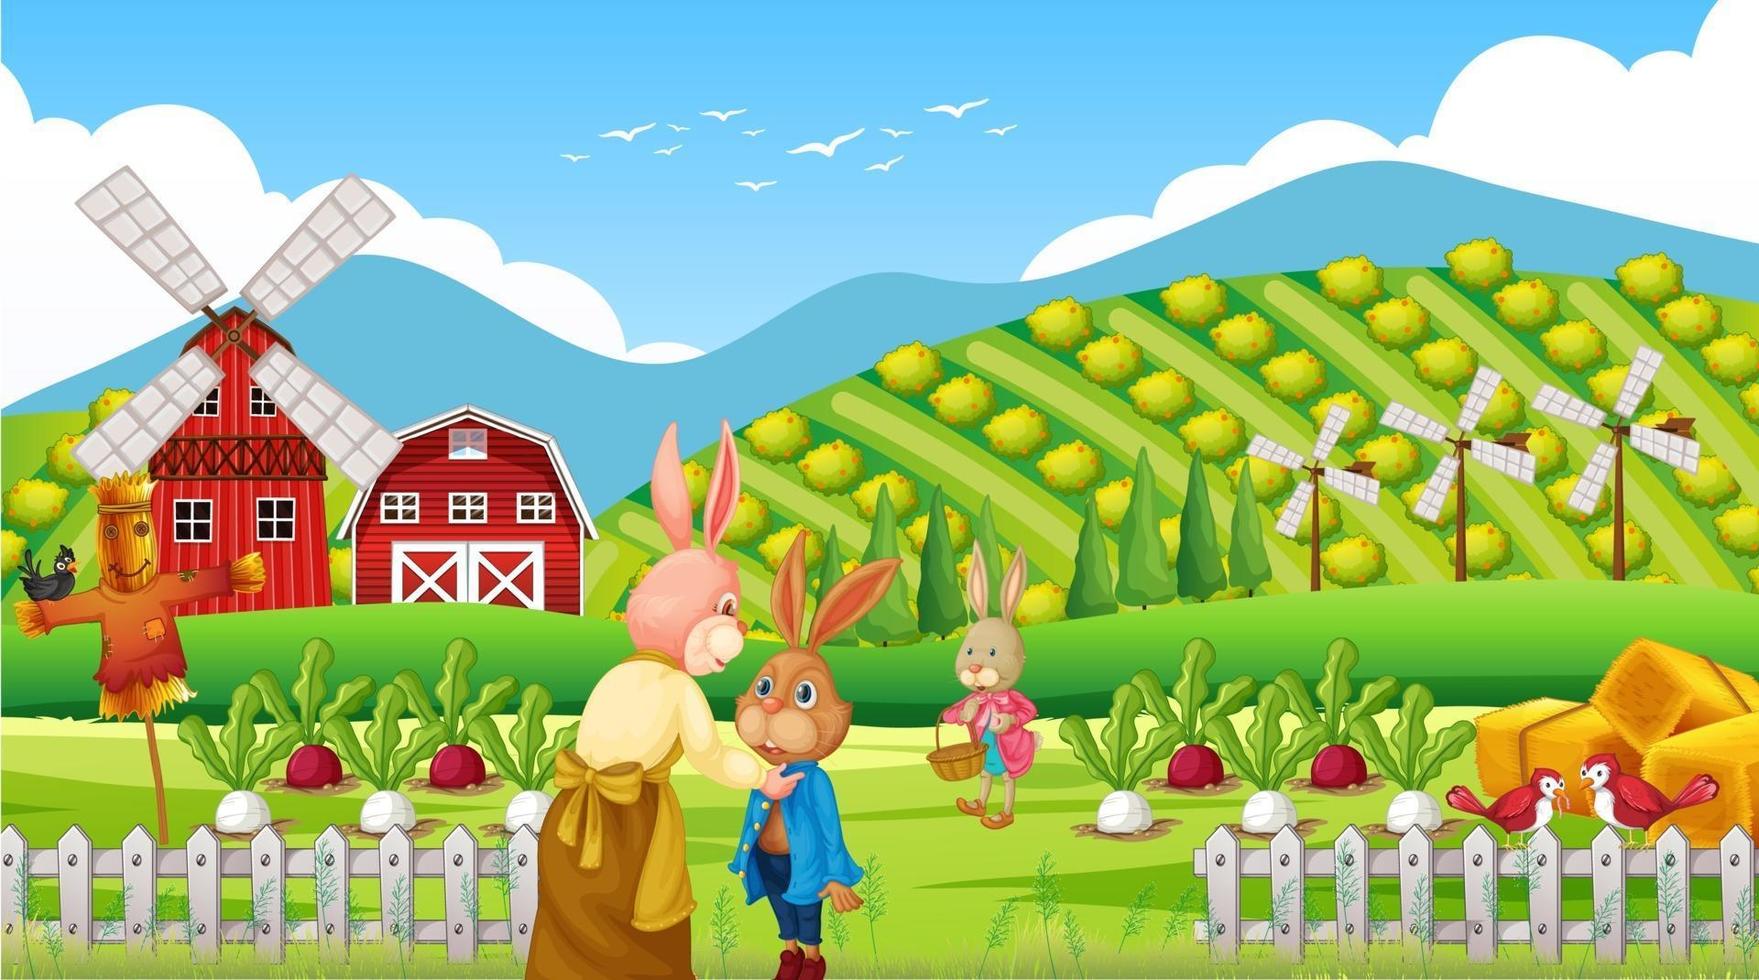 Bauernhofszene tagsüber mit Kaninchenfamilie vektor